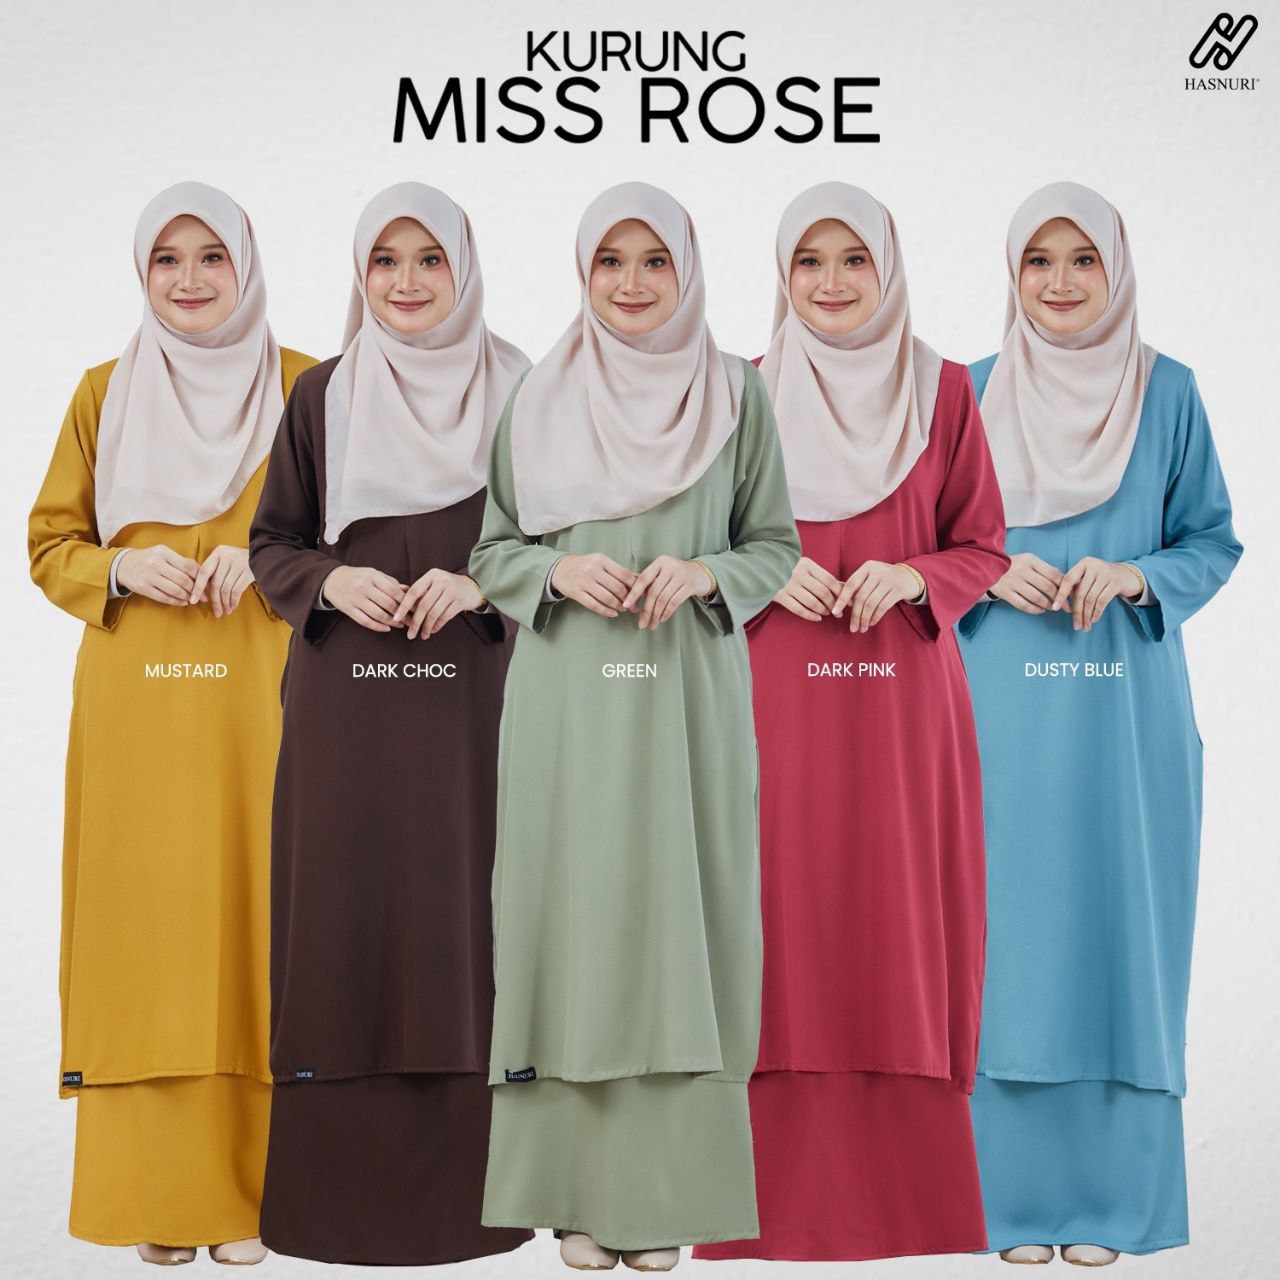 Kurung Miss Rose - Mustard